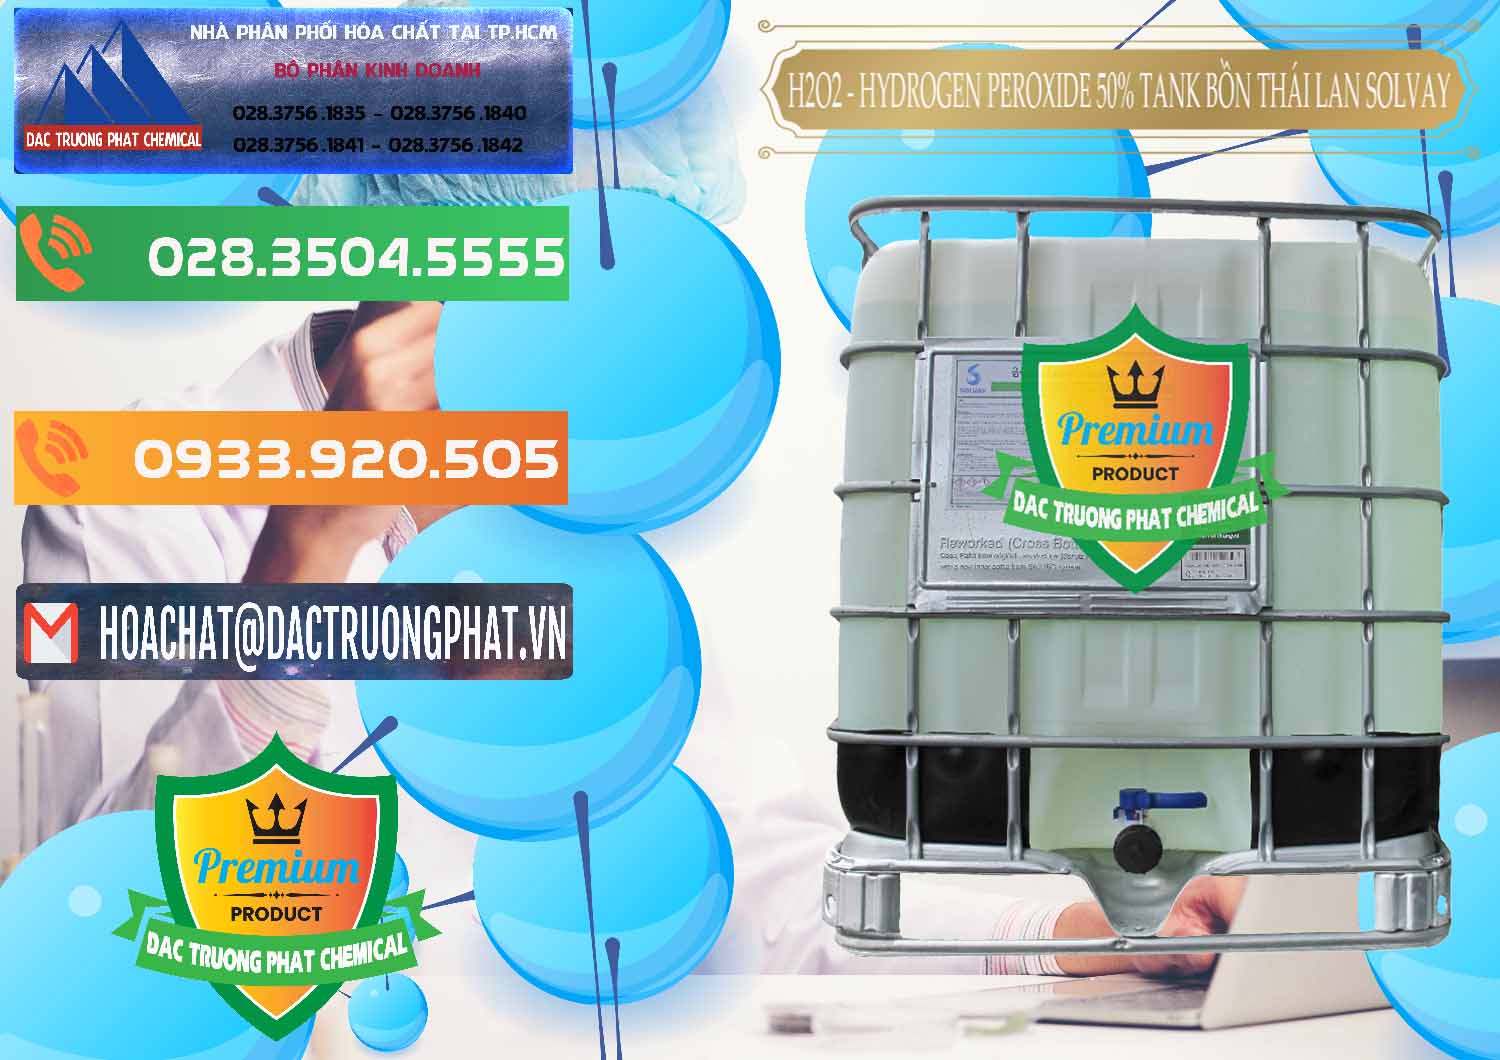 Đơn vị kinh doanh & bán H2O2 - Hydrogen Peroxide 50% Tank IBC Bồn Thái Lan Solvay - 0072 - Nơi chuyên kinh doanh & phân phối hóa chất tại TP.HCM - hoachatxulynuoc.com.vn